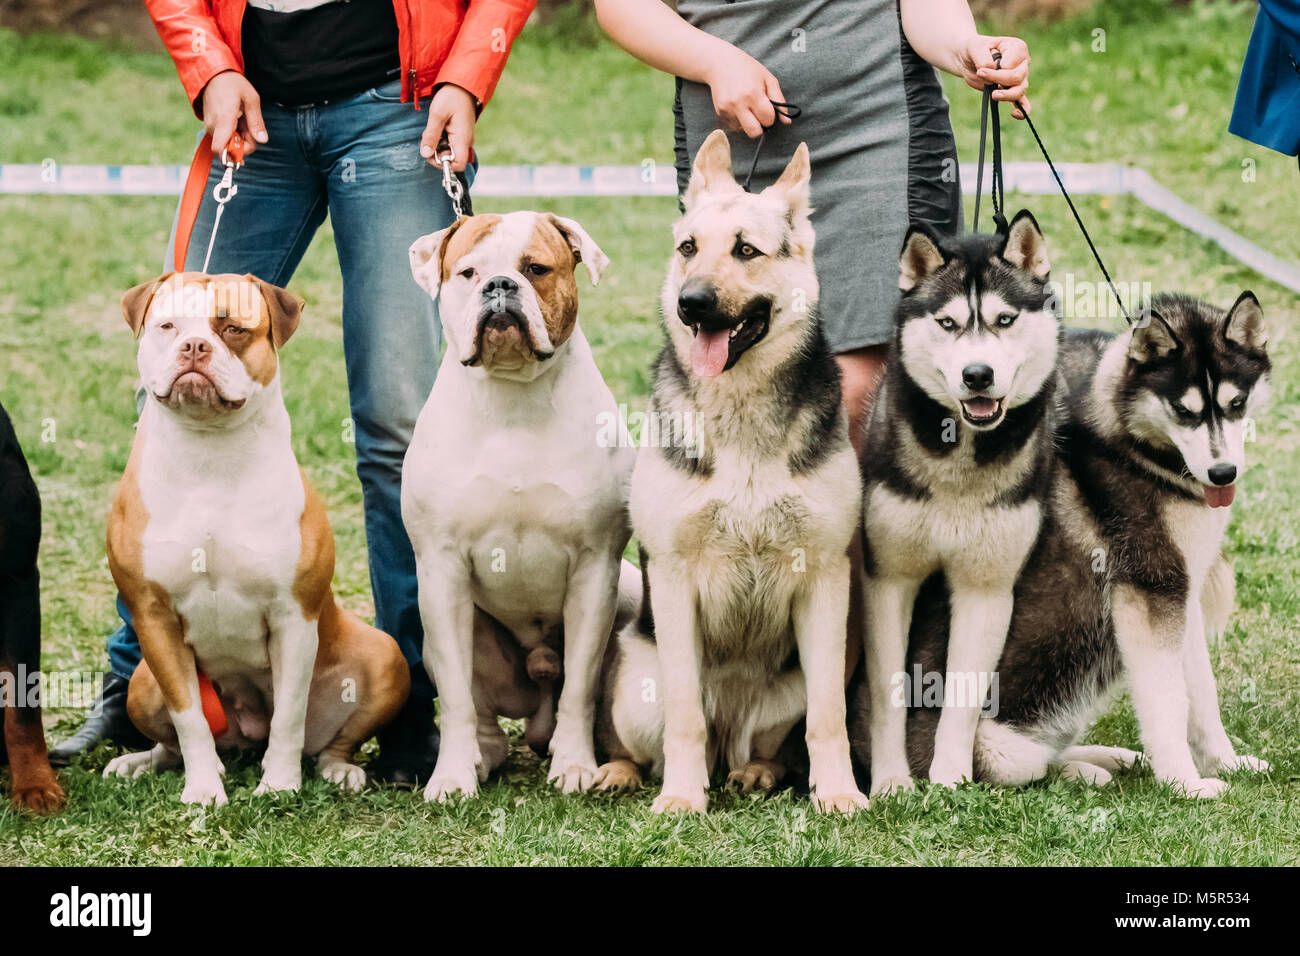 Deux American Bulldog Chien, Chien Loup Alsacien ou Berger Allemand et deux chiens husky assis ensemble dans l'herbe verte. Banque D'Images